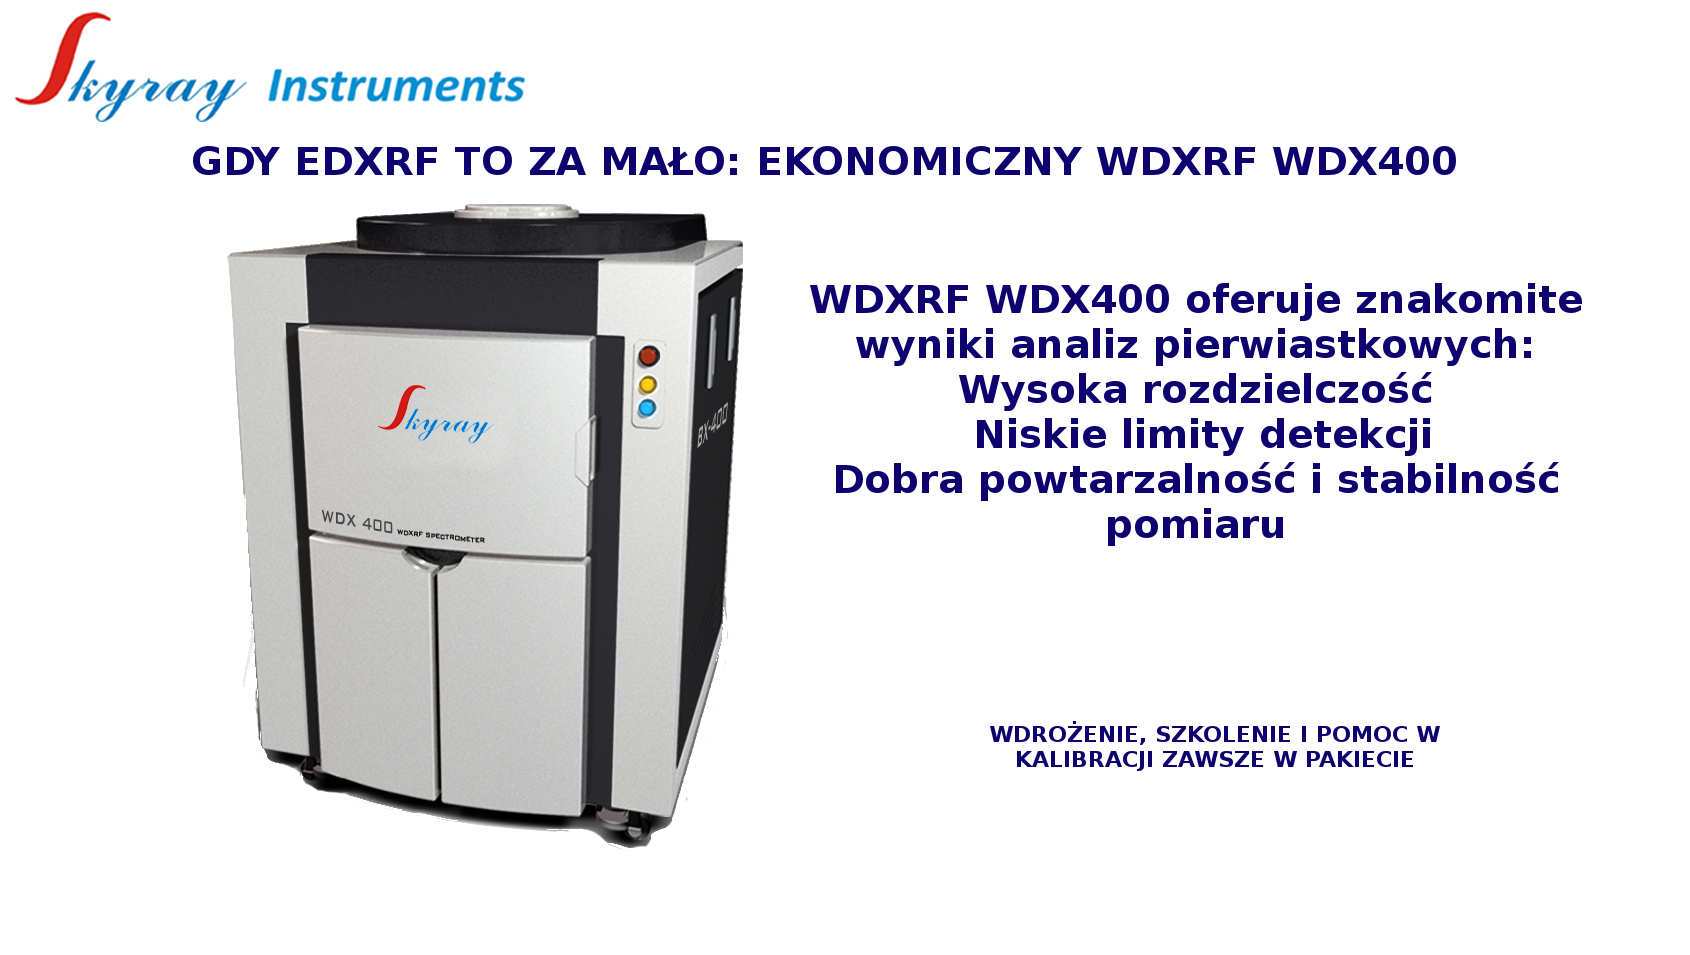 Spektrometr WDXRF WDX400